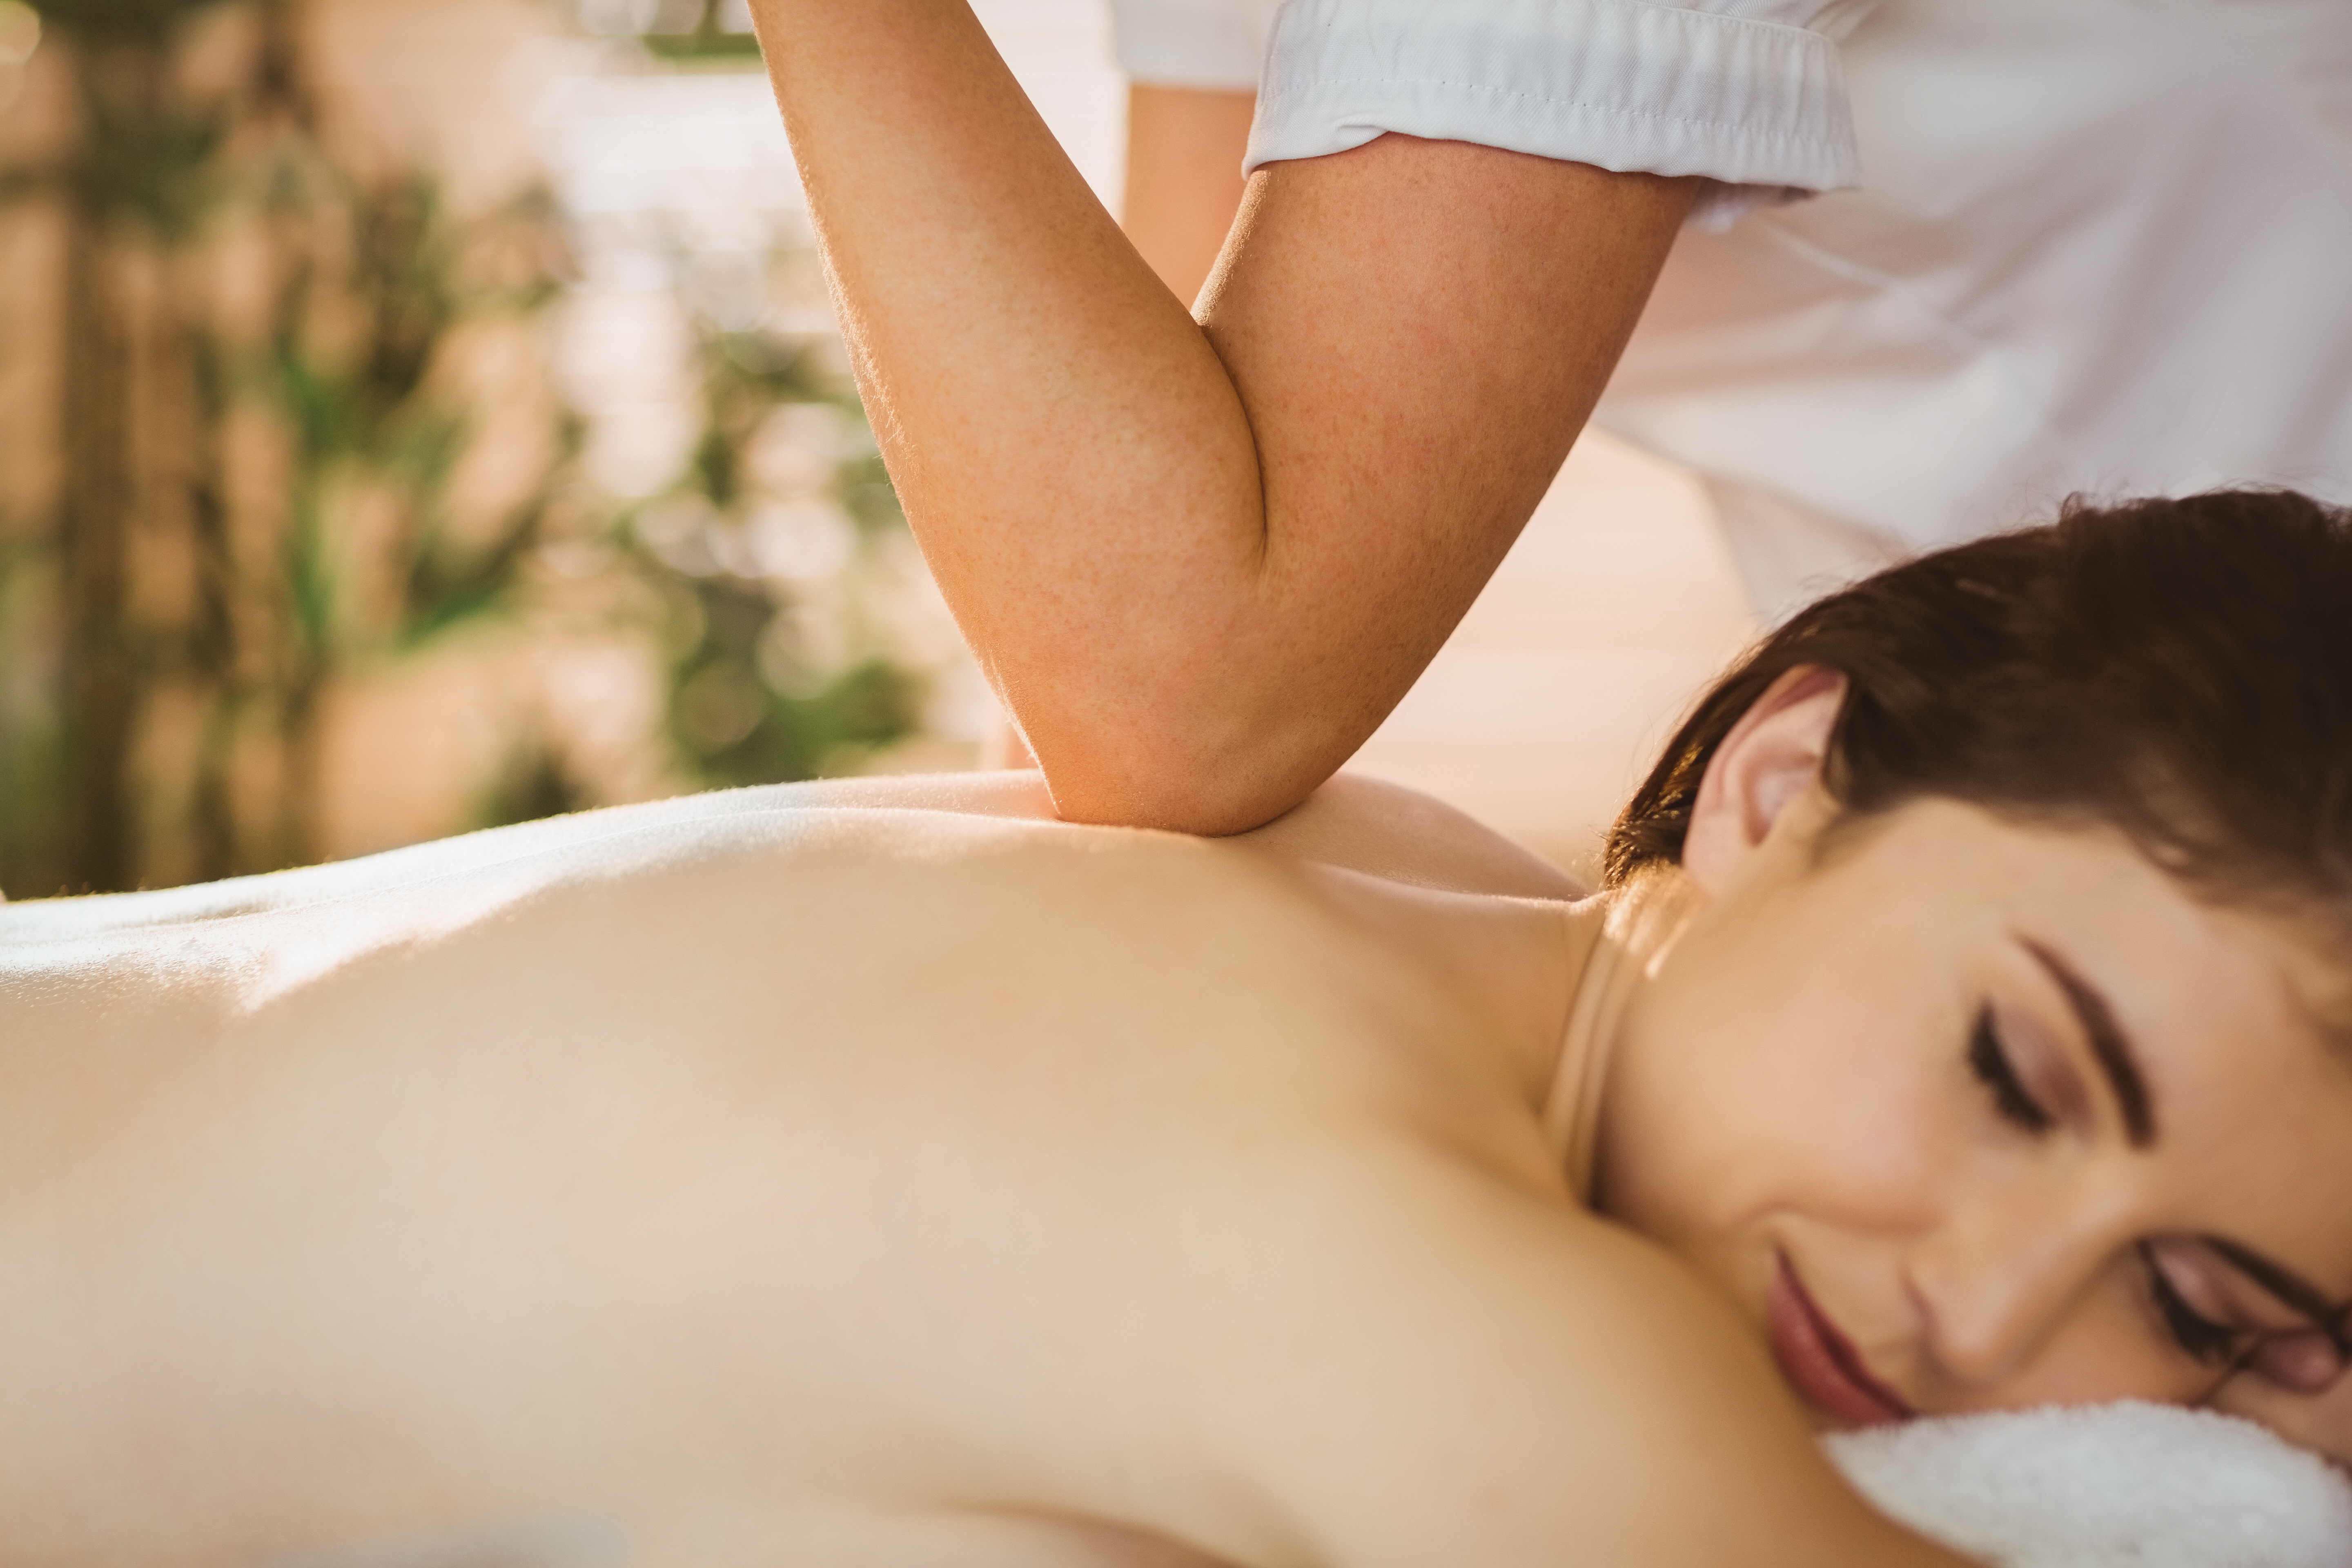 A woman receiving a massage.